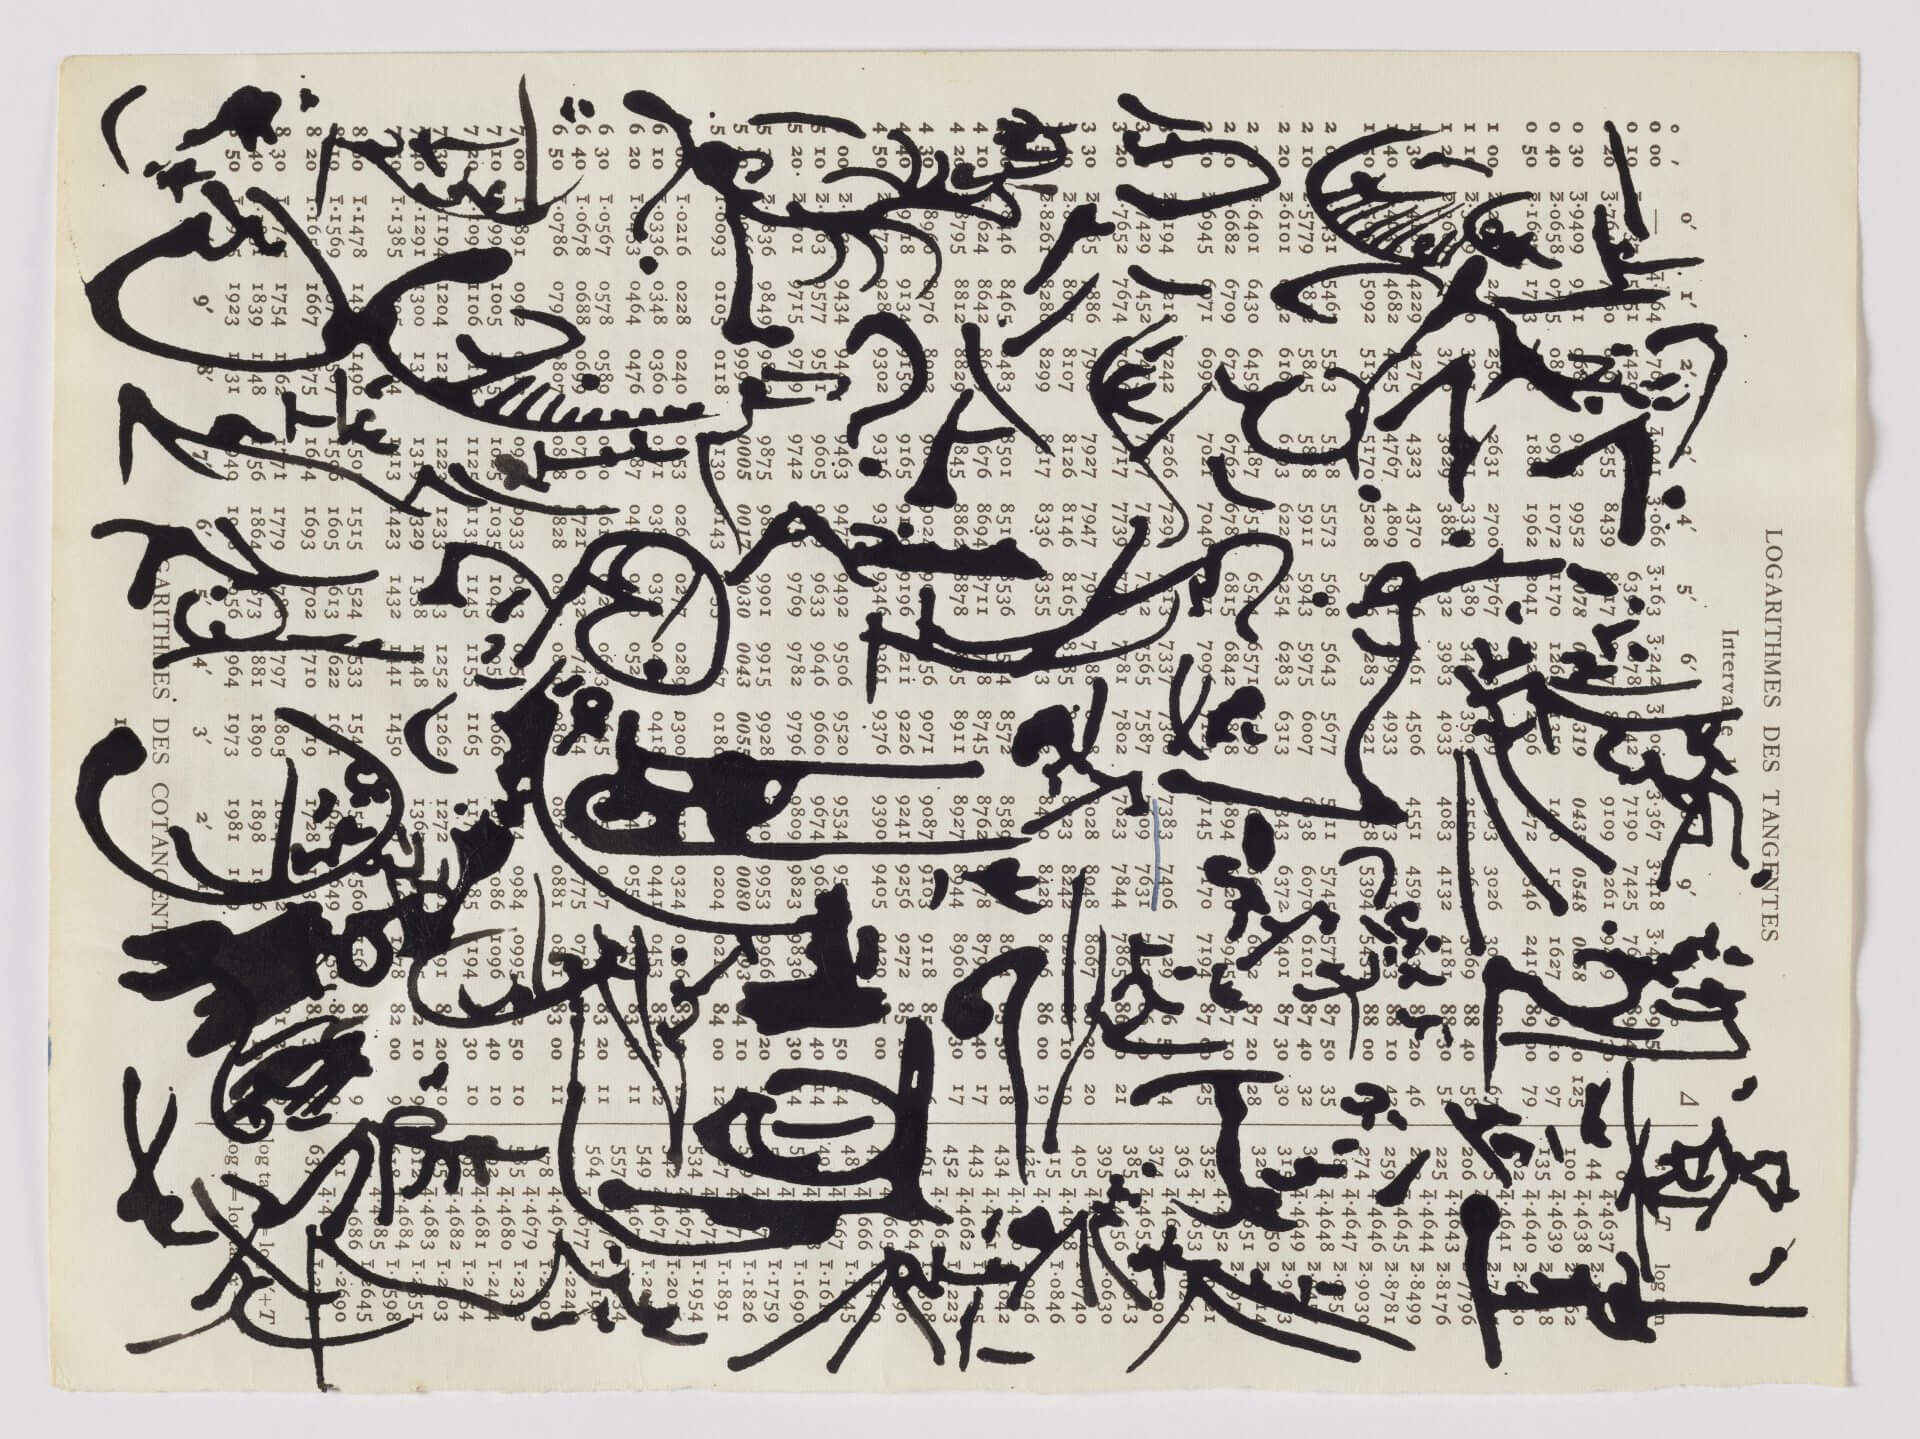 Christian Dotremont Logogrammes sur tables de logarithmes Encre de Chine sur papier 25 x 19 cm s.d.